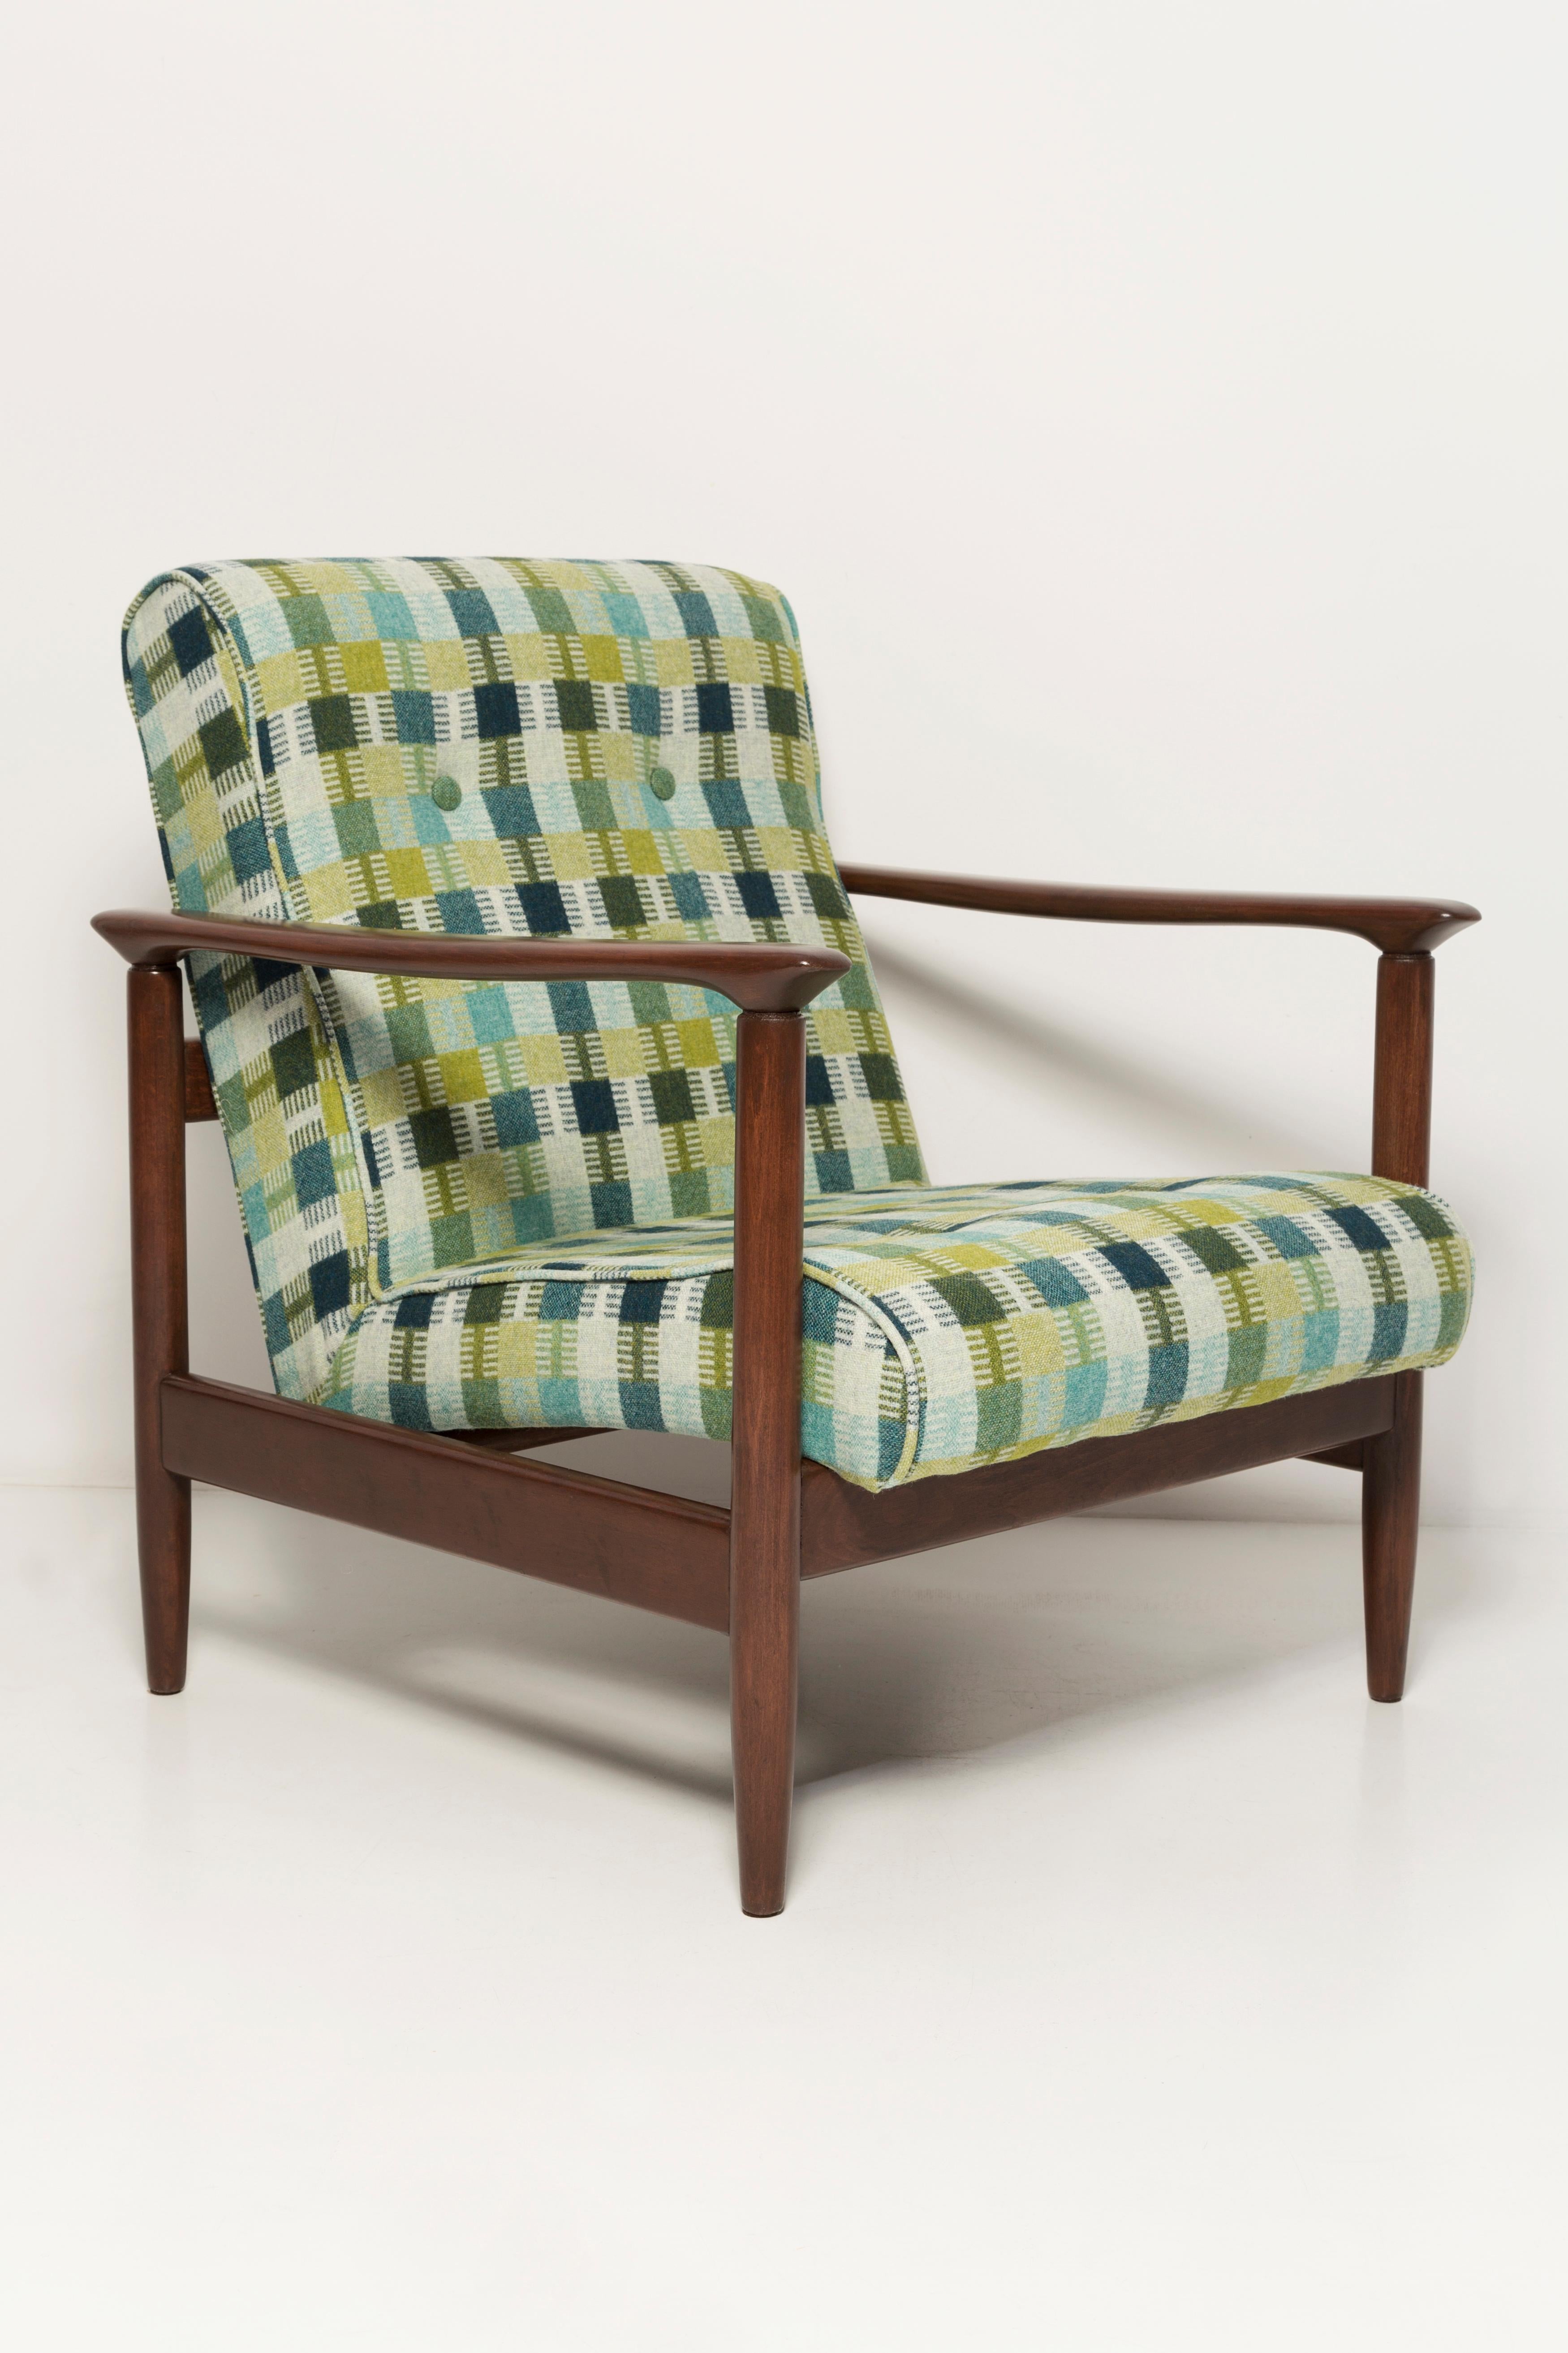 Schöner Sessel aus grüner Wolle GFM-142, entworfen von Edmund Homa, einem polnischen Architekten, Designer von Industriedesign und Innenarchitektur, Professor an der Akademie der Schönen Künste in Danzig. 

Der Sessel wurde in den 1960er Jahren in